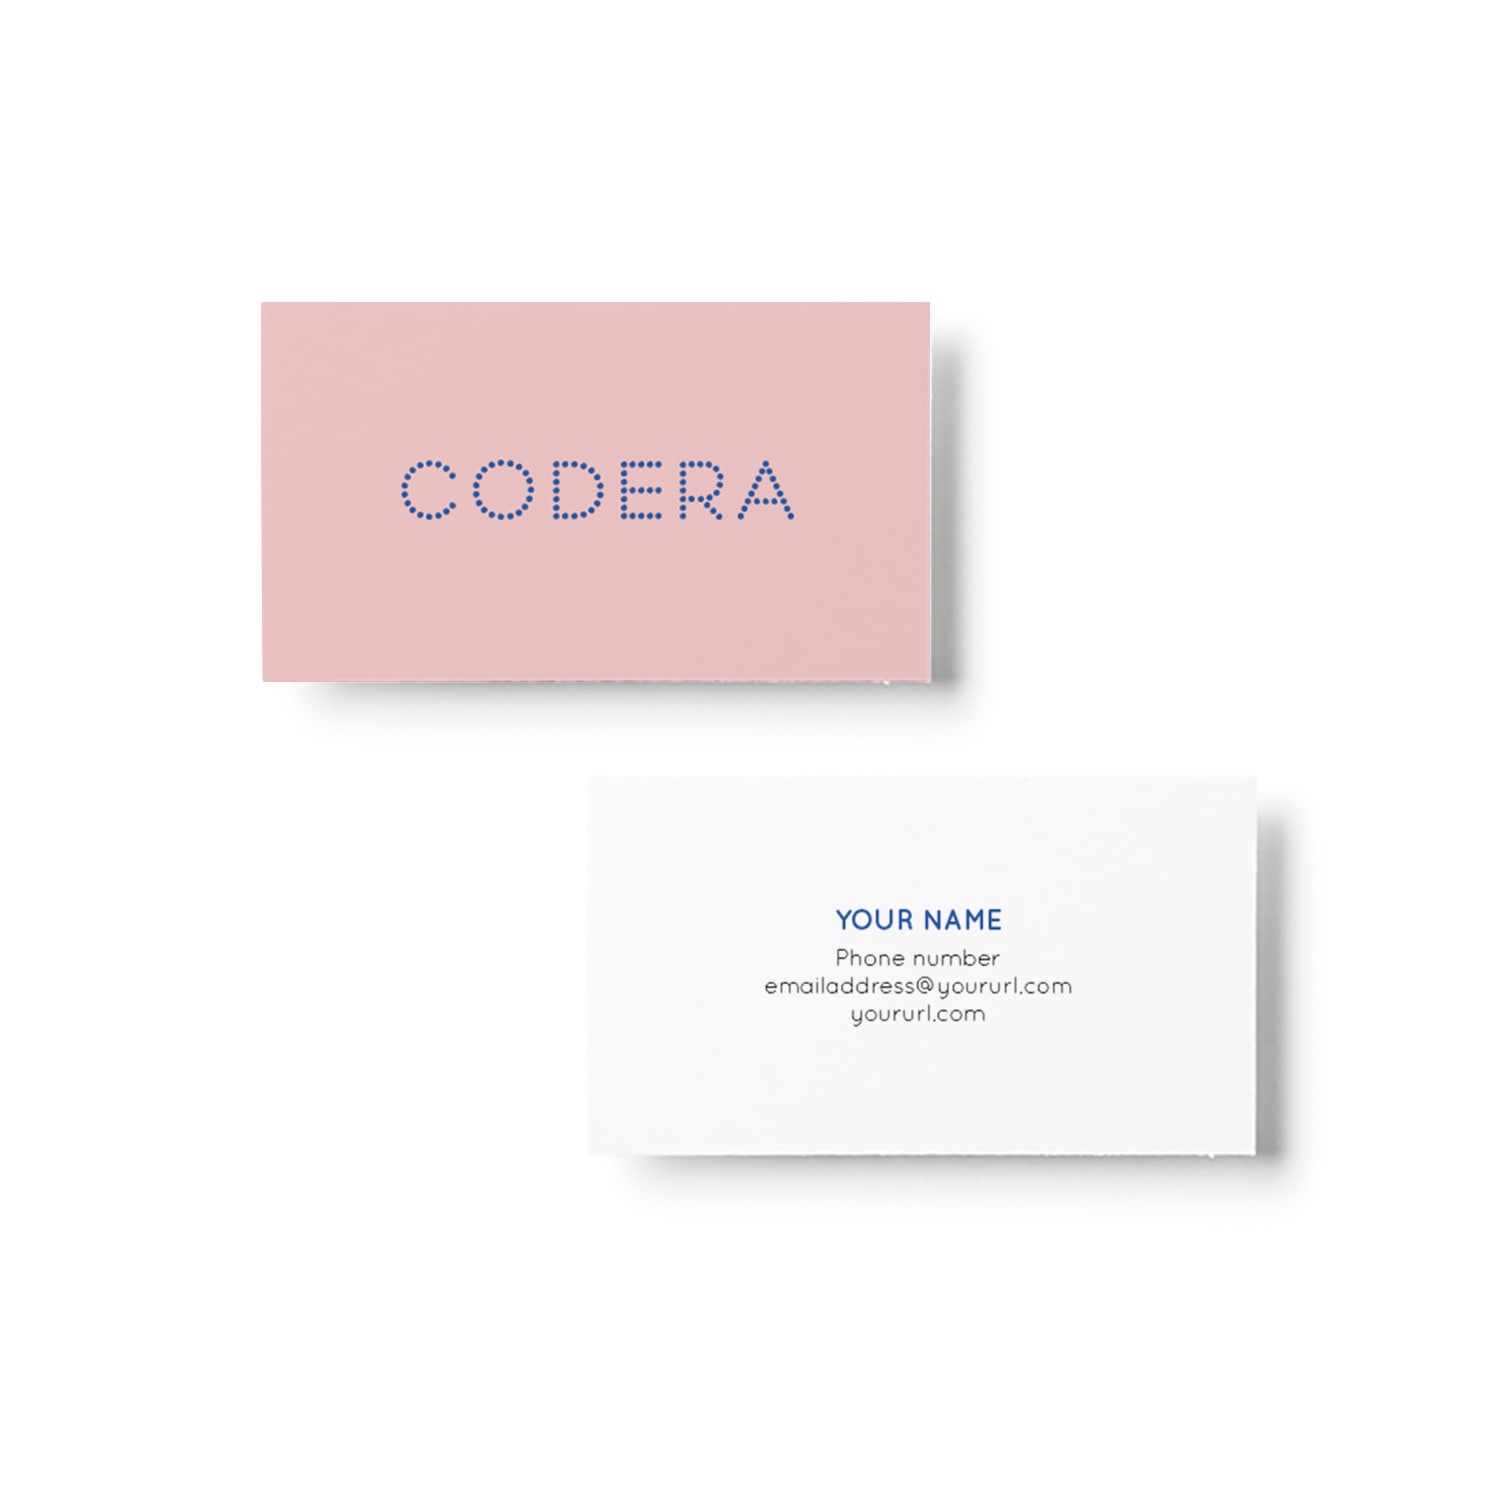 Codera Business Card Design_Copyright Tiny Crowd